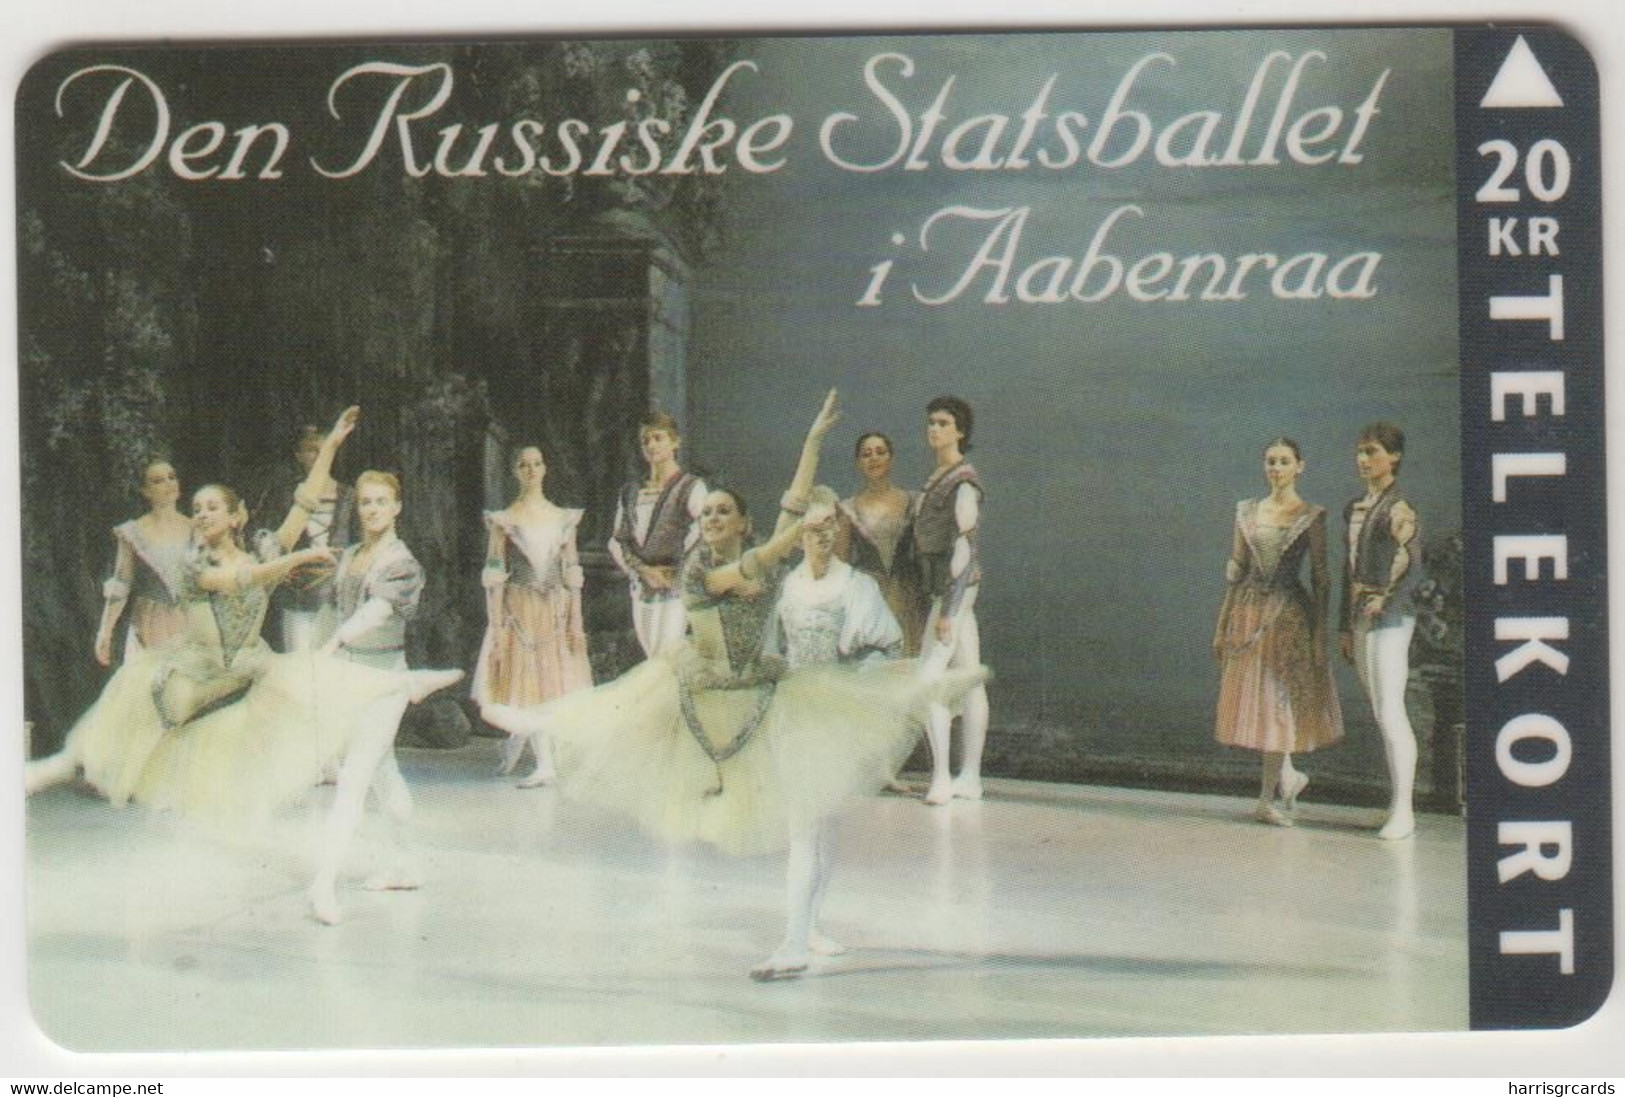 DENMARK - Russian State Ballet 2, Tele Soenderjylland, 20 Dkr, 12/94, Tirage 1.000, Used - Denmark